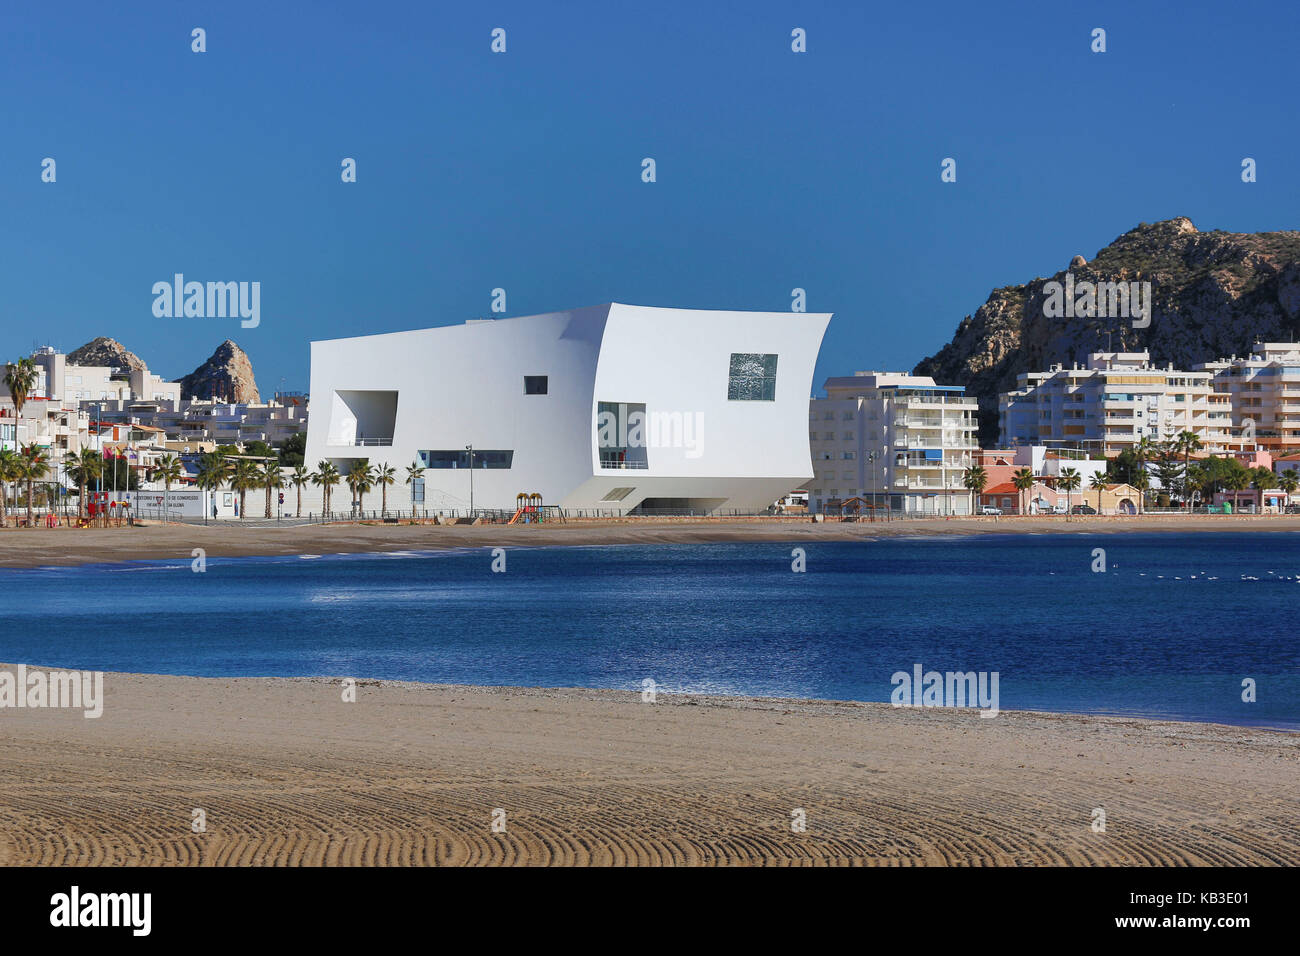 Espagne, Andalousie, province d'Almeria, aguilas, blanc convention hall Banque D'Images